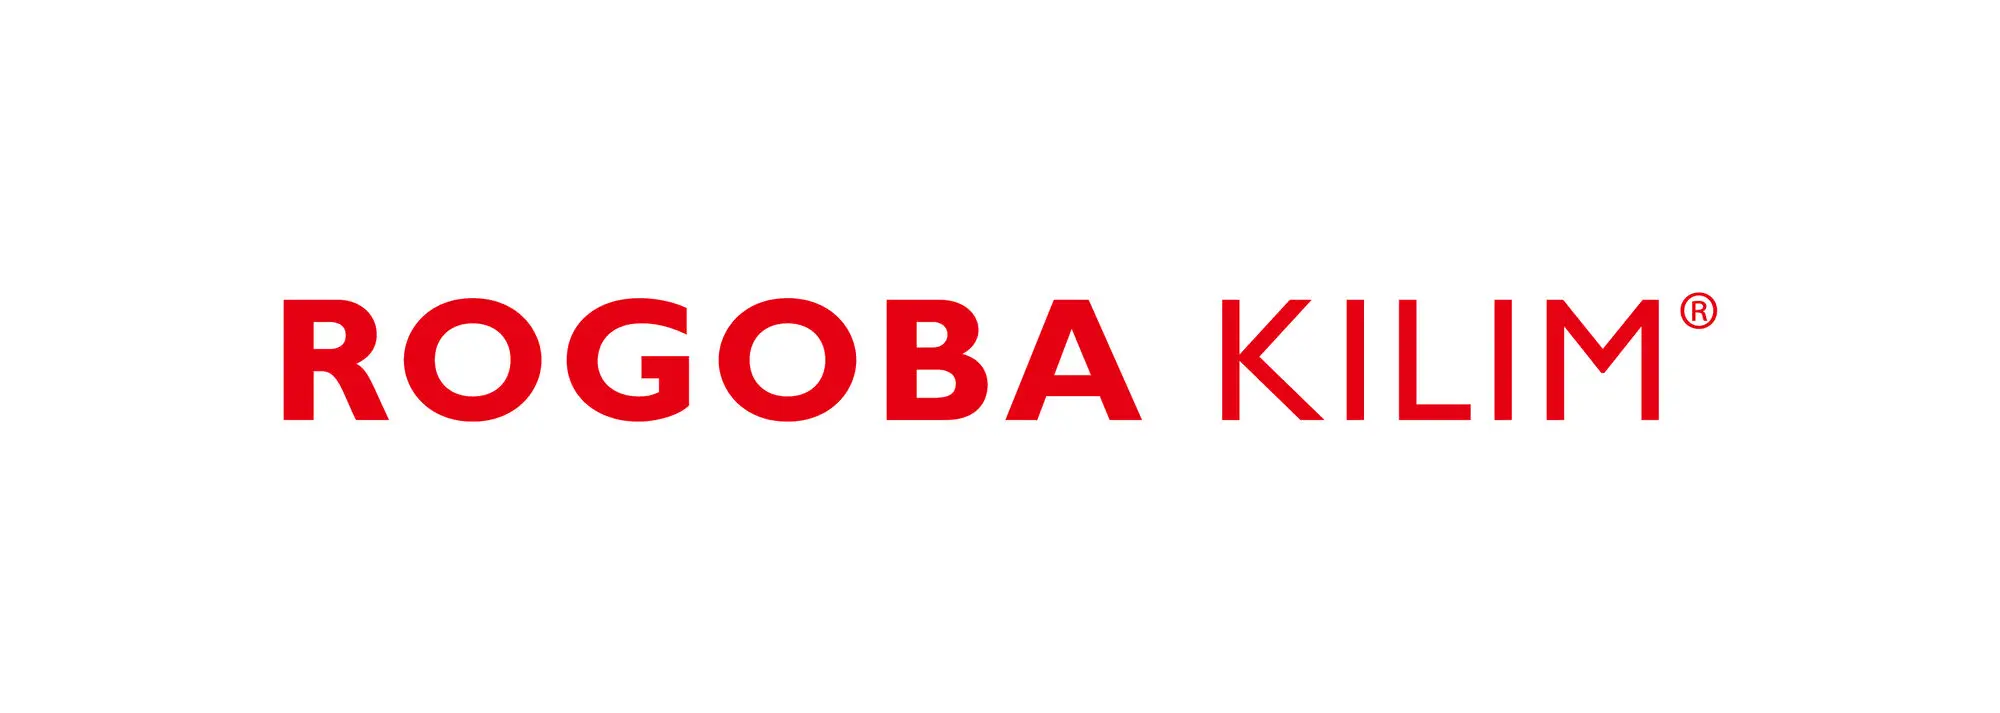 ROGOBA KILIM Logo